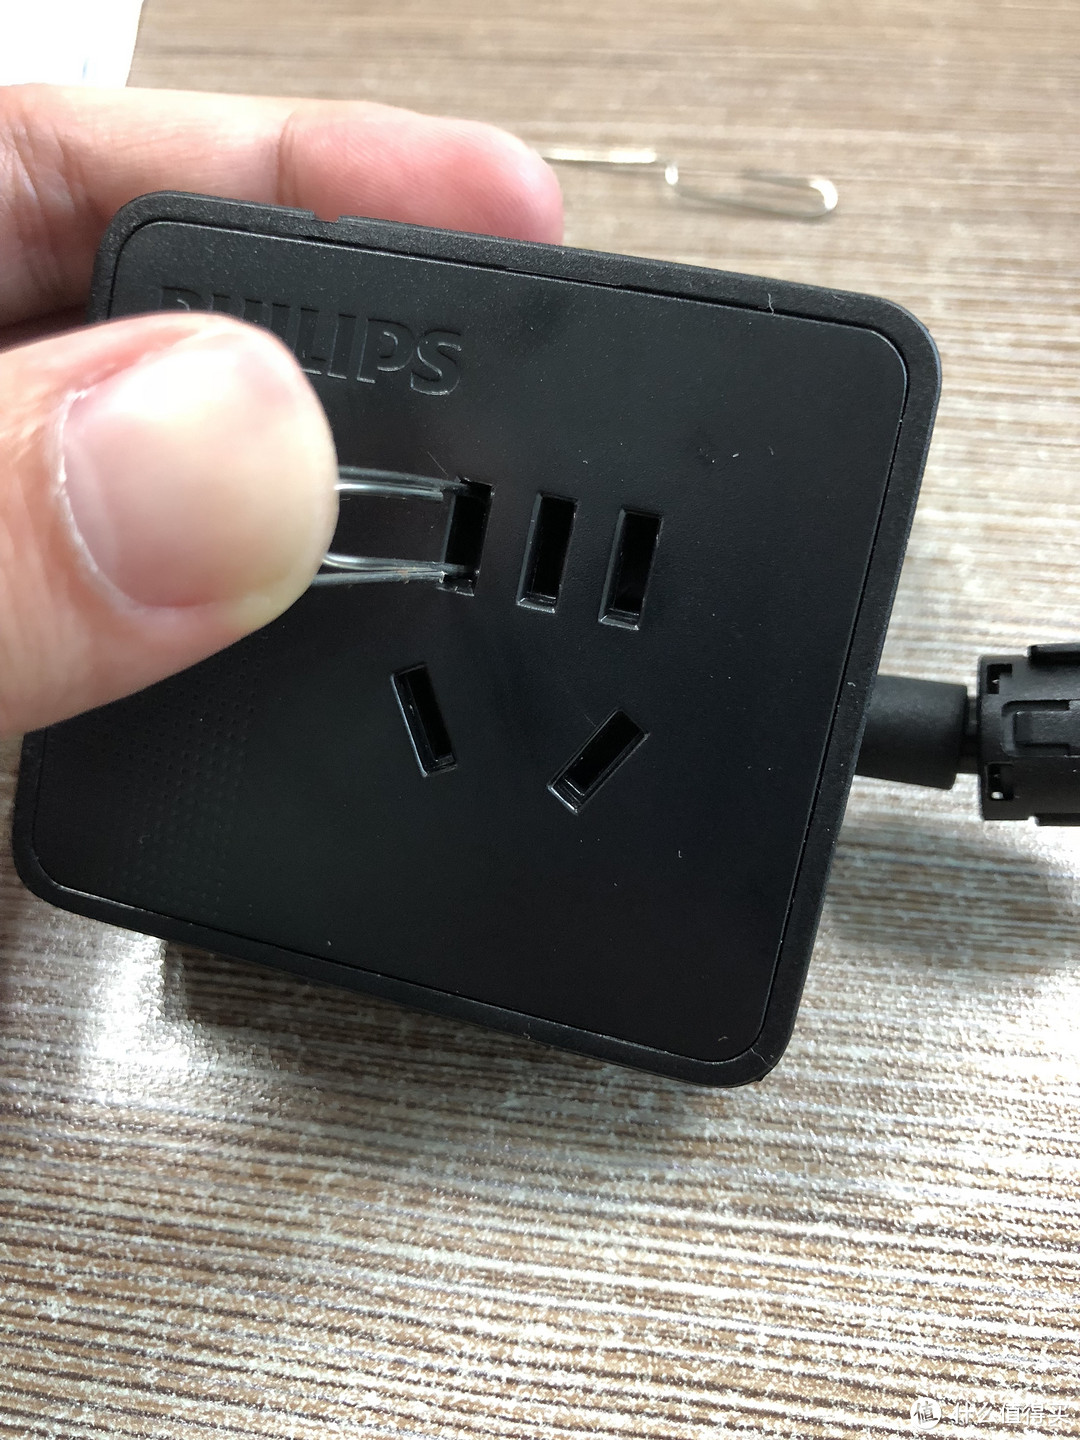 #轻众测#飞利浦 便携迷你USB桌面旅行插座